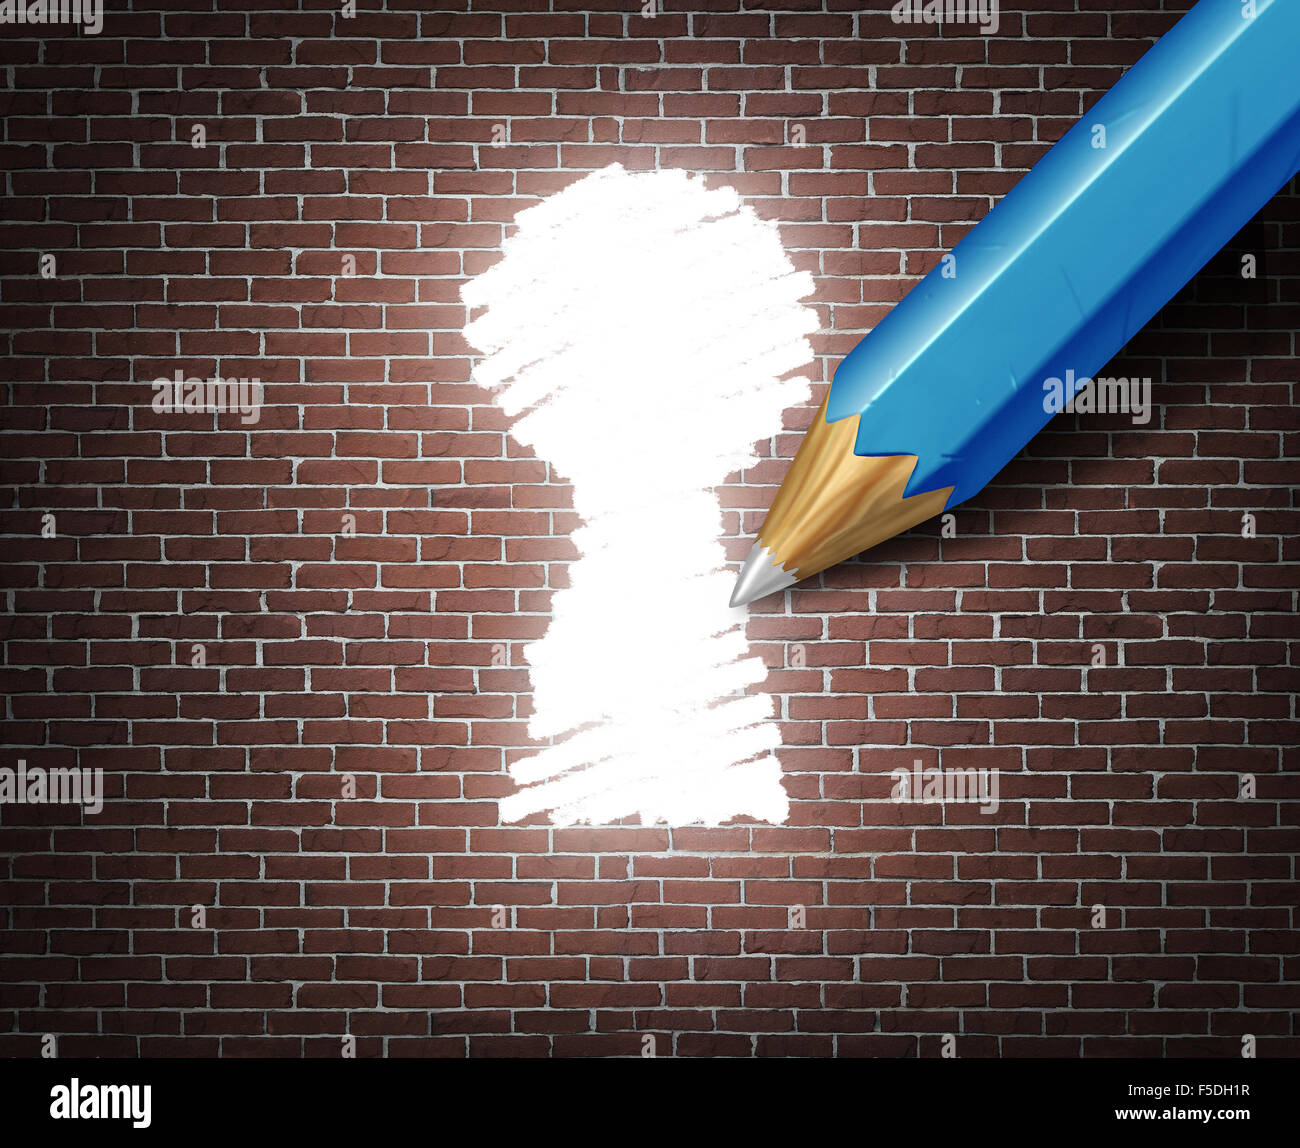 Möglichkeit Idee Geschäftskonzept als weiße Spitzen Bleistift zeichnen einer Schlüsselloch-Form auf eine Mauer als Zugang zur Möglichkeit Metapher für die Suche nach einem Weg zum geschäftlichen Erfolg durch kreative Ideen. Stockfoto